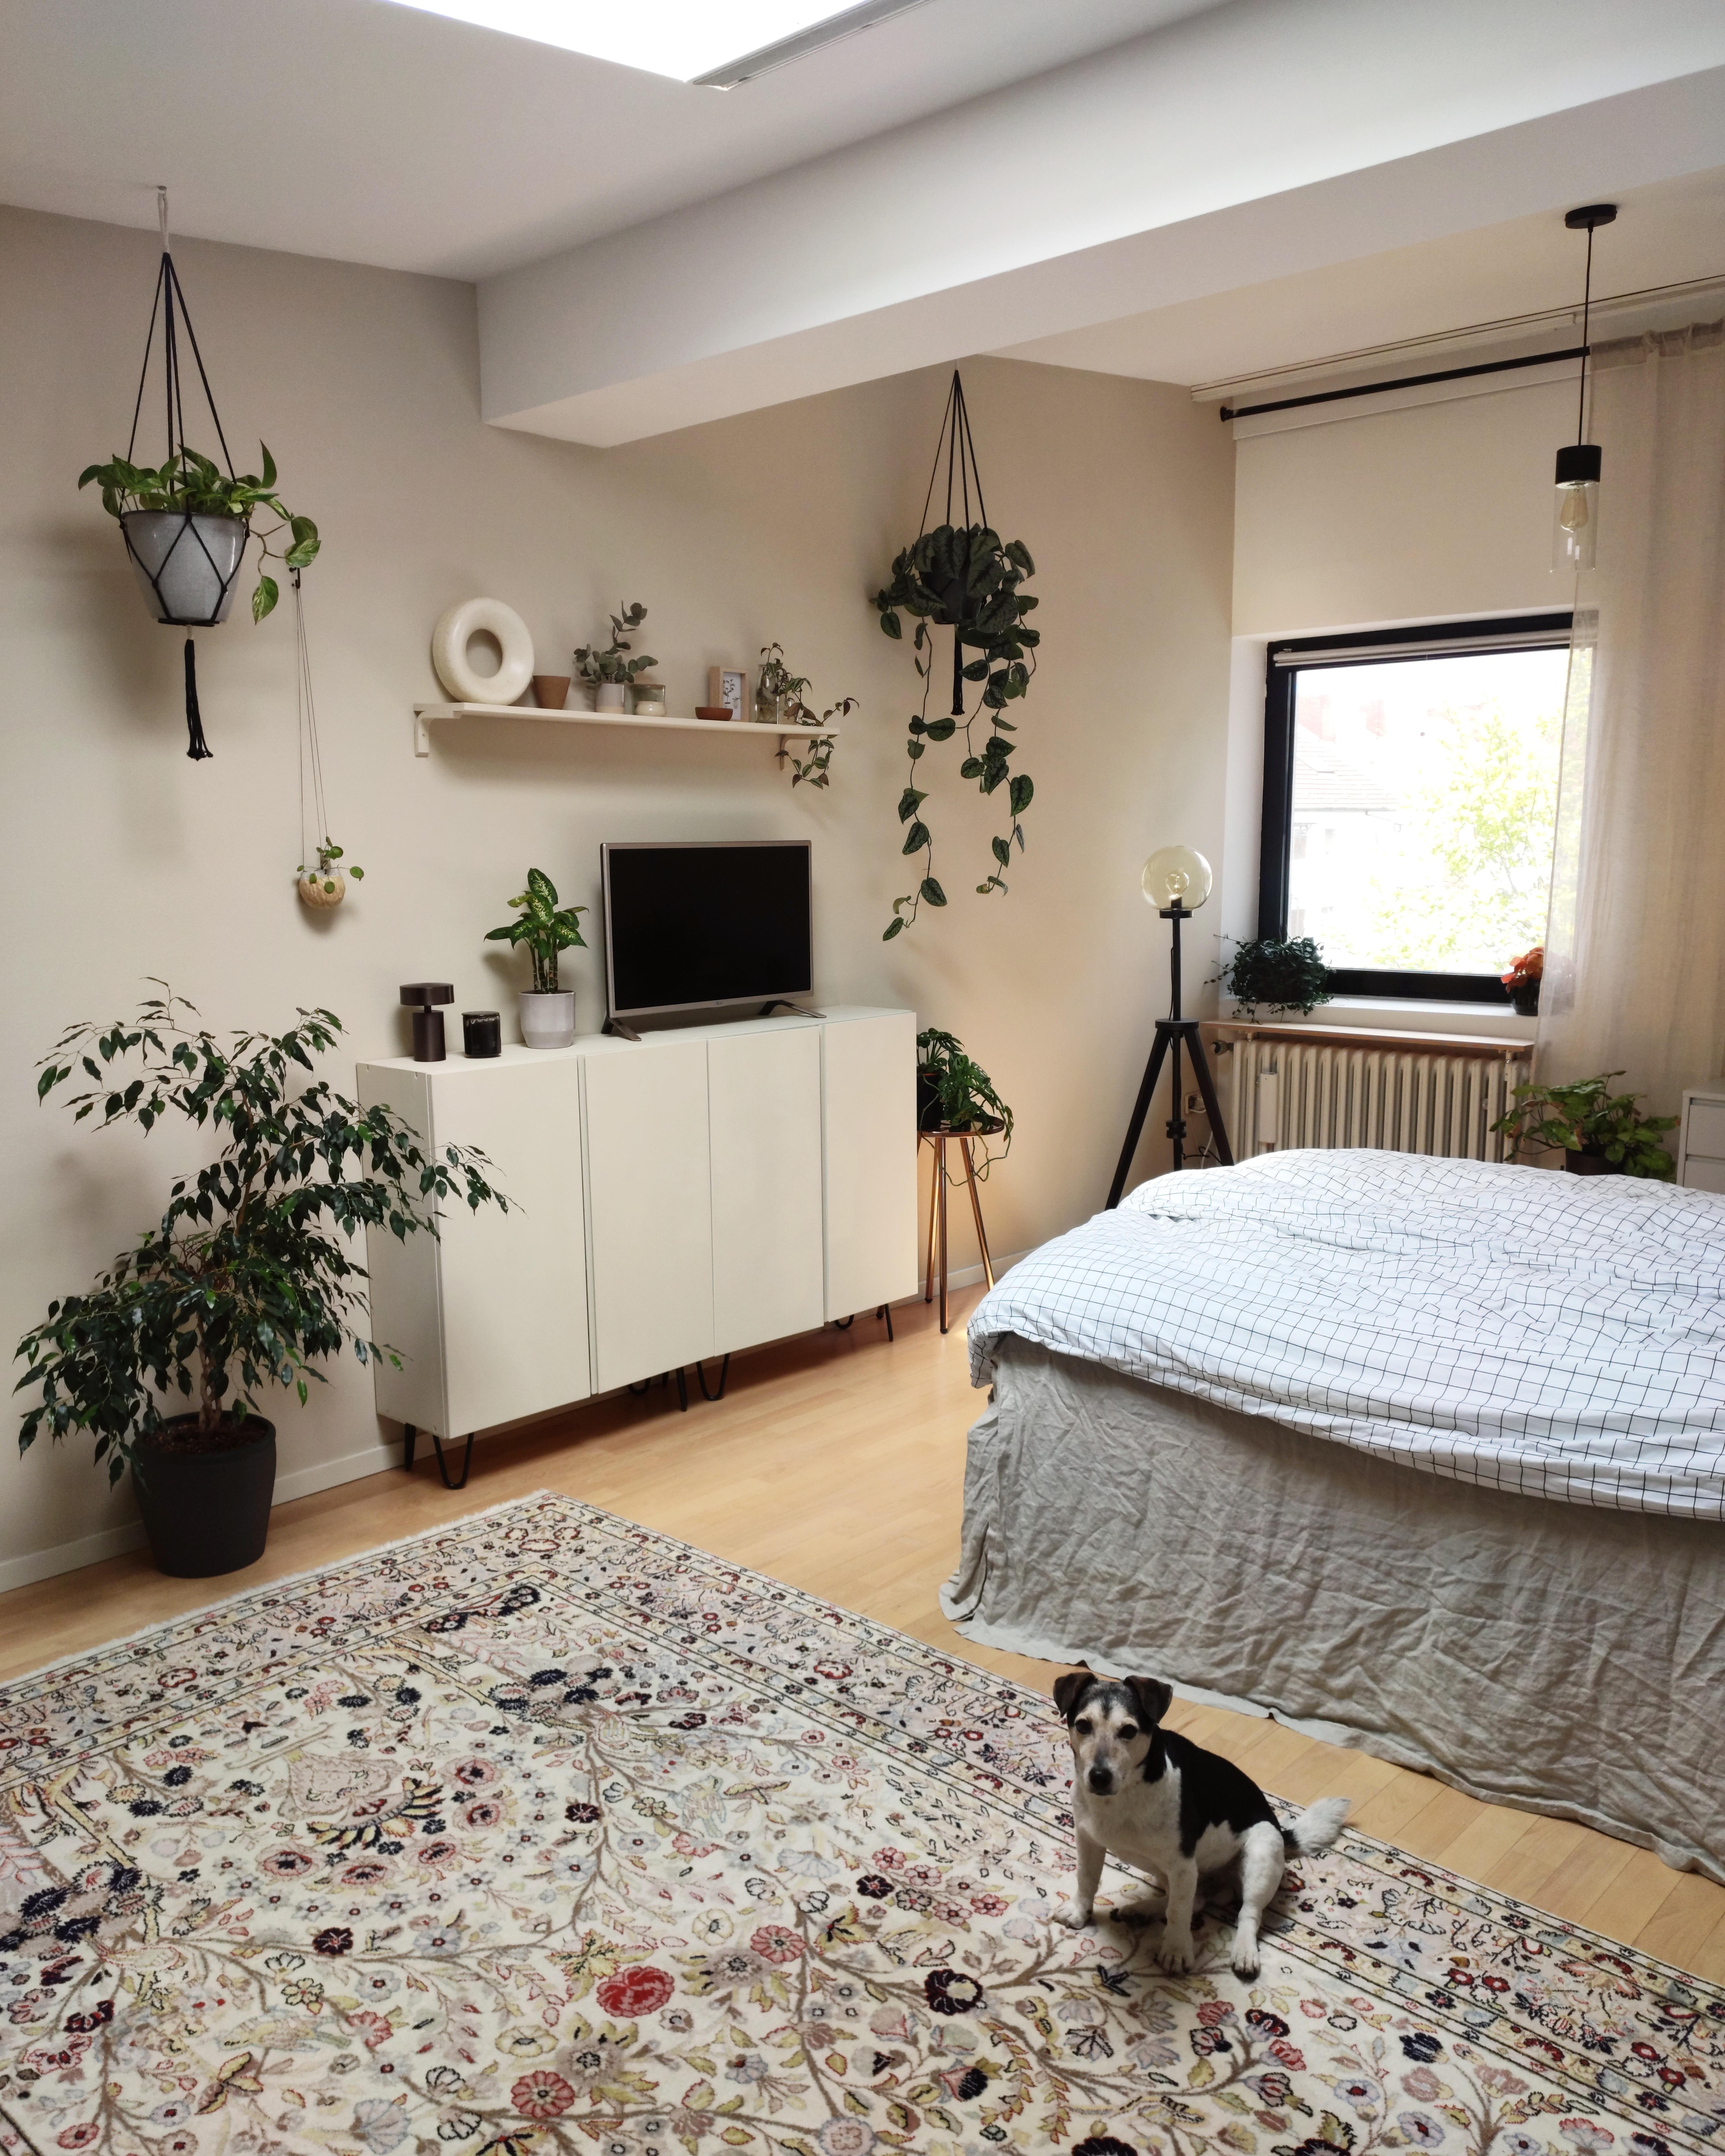 Schlafzimmer in Beige mit Hund

#beige #perserteppich #schlafzimmer